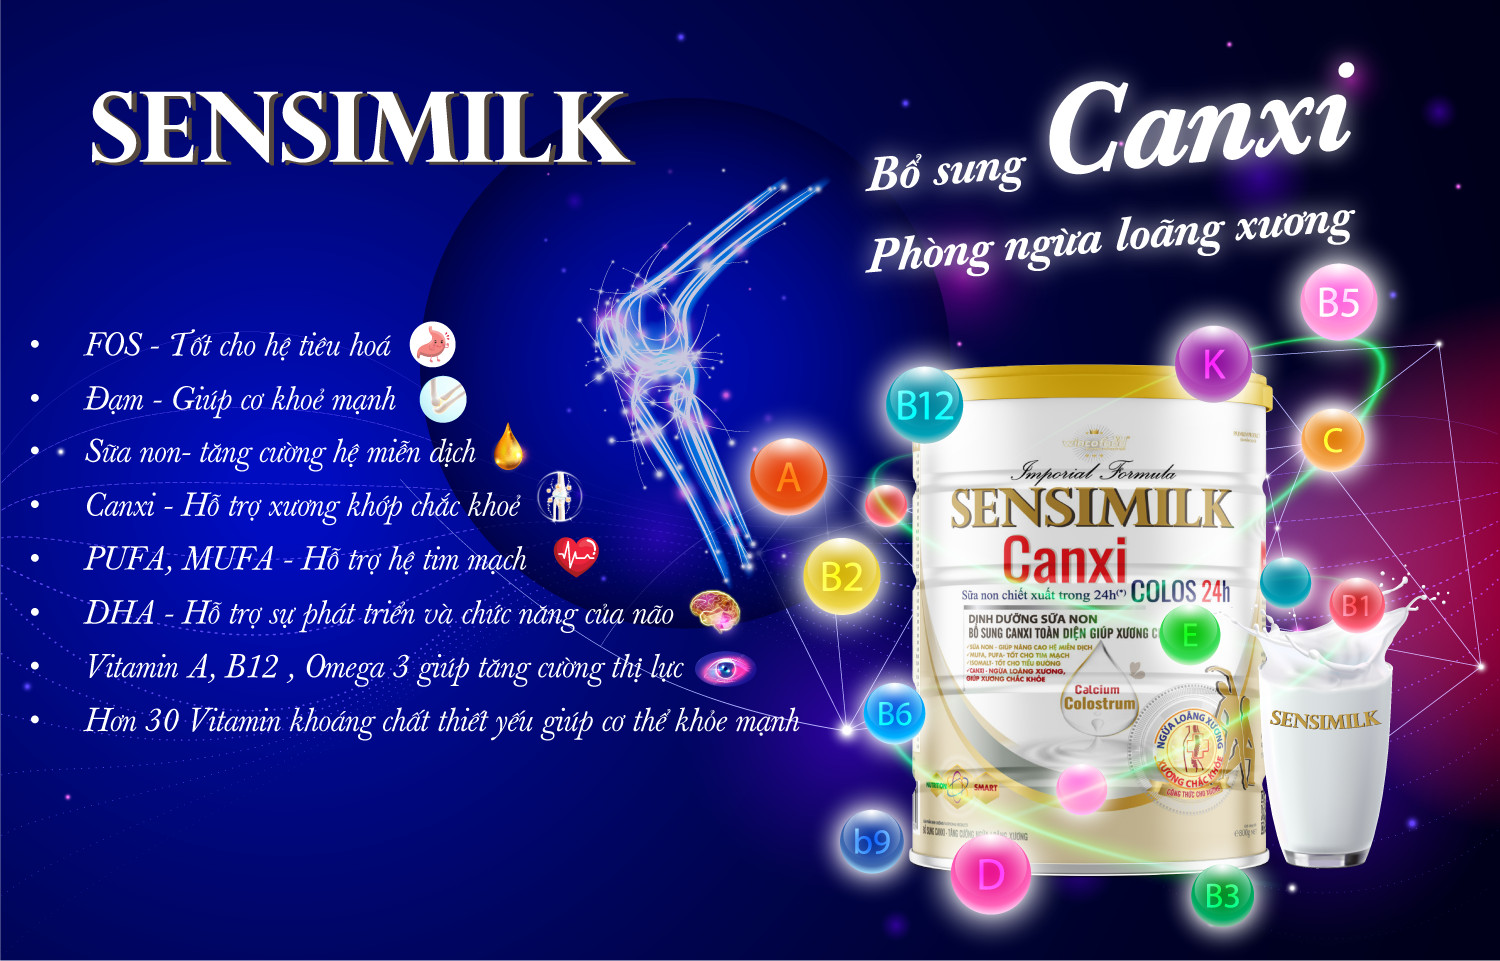 Sữa non Wincofood SENSIMILK CANXI (800g) - Bổ sung canxi cùng vitamin, khoáng chất giúp xương chắc khỏe.